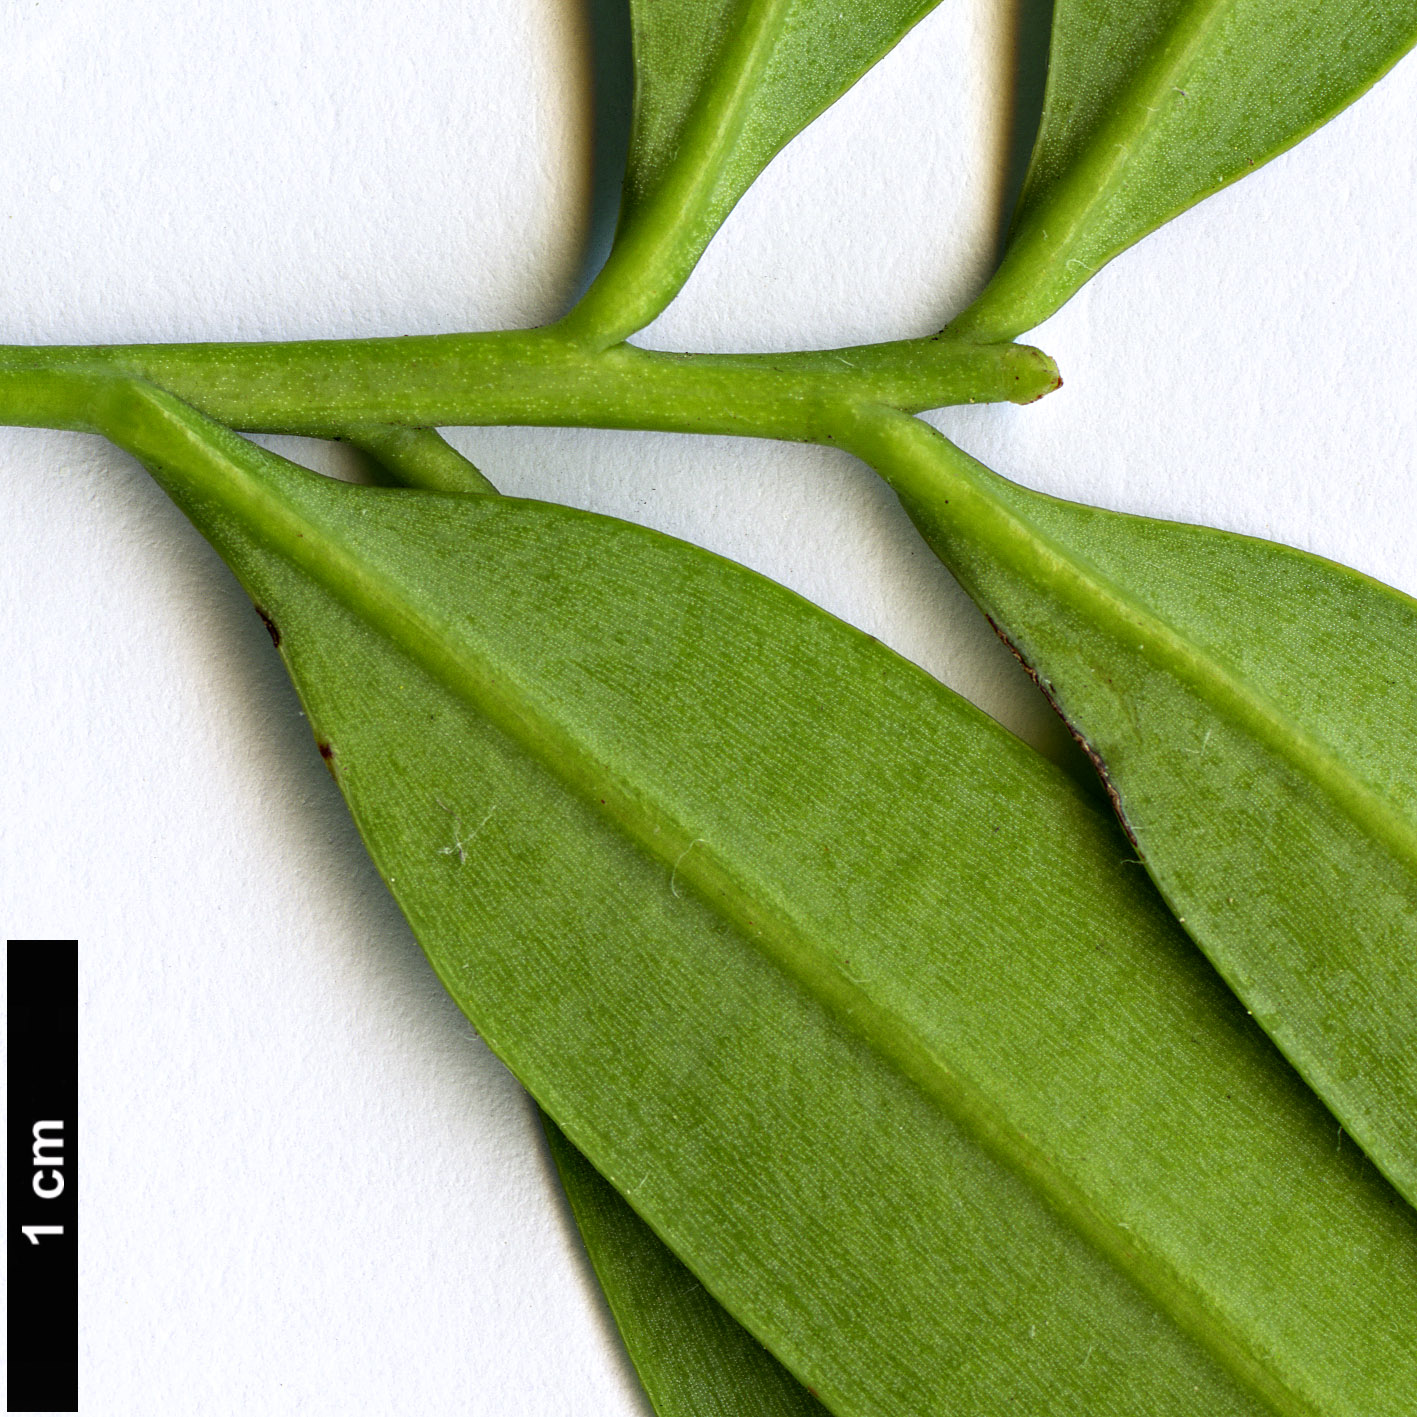 High resolution image: Family: Podocarpaceae - Genus: Sundacarpus - Taxon: amarus